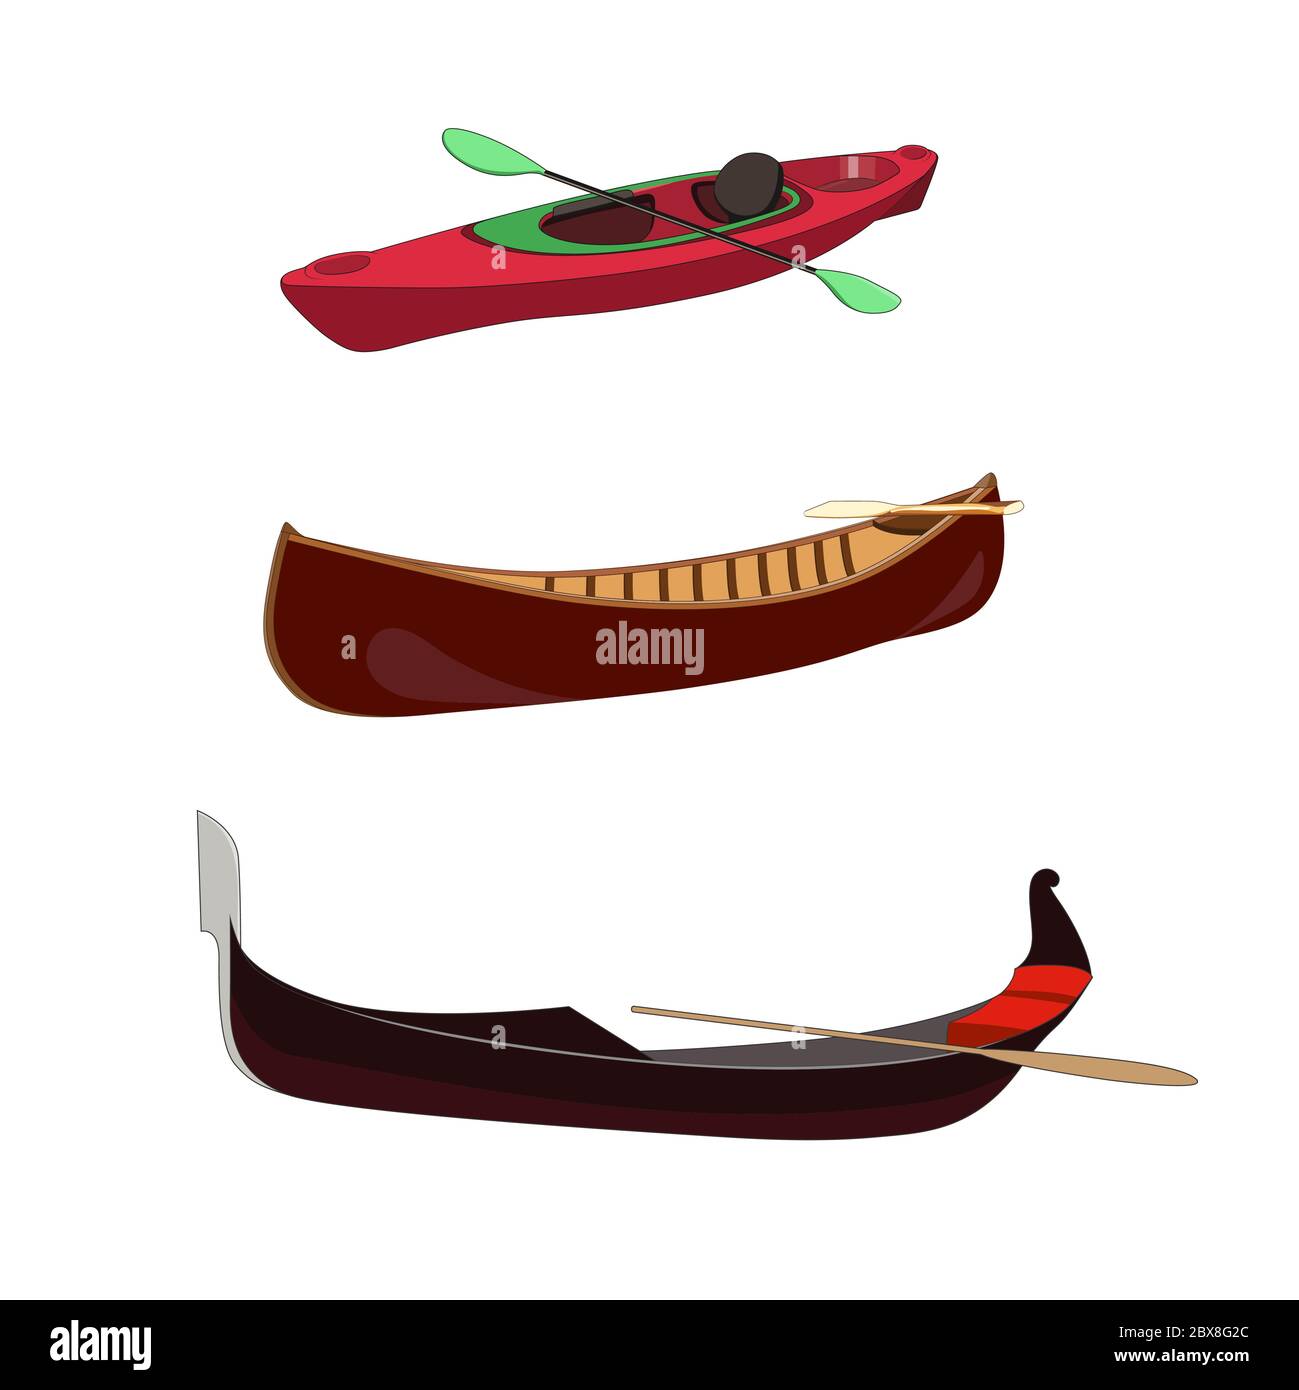 Ensemble de bateau : gondole vénitienne bateau à rawing traditionnel. Canot en bois. Kayak de course avec paddels. Illustration graphique isolée vectorielle Illustration de Vecteur